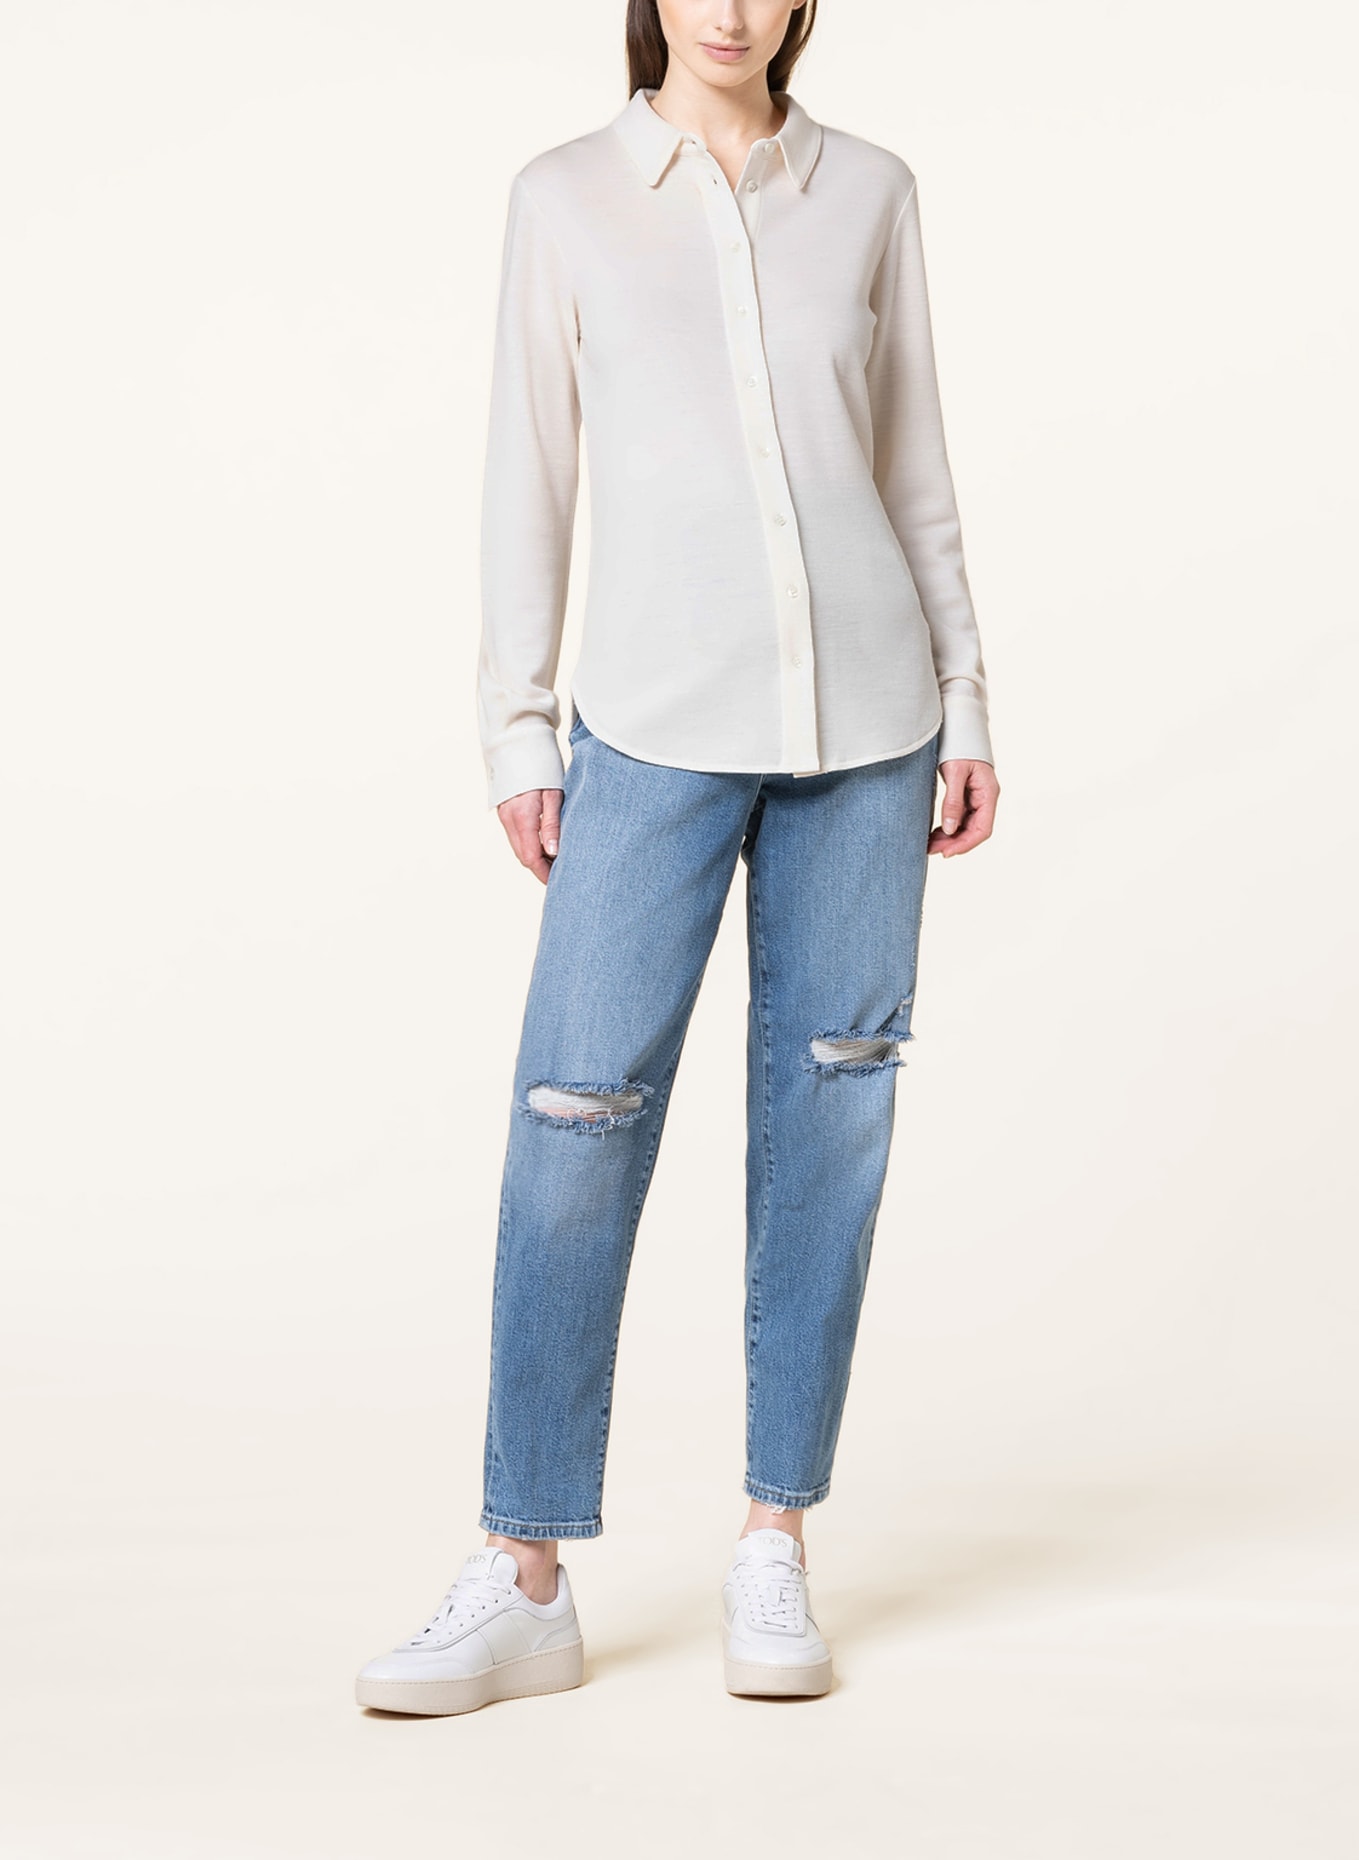 GOLDGARN DENIM Mom jeans OSTSTADT, Color: 1010 vibtageblue (Image 2)